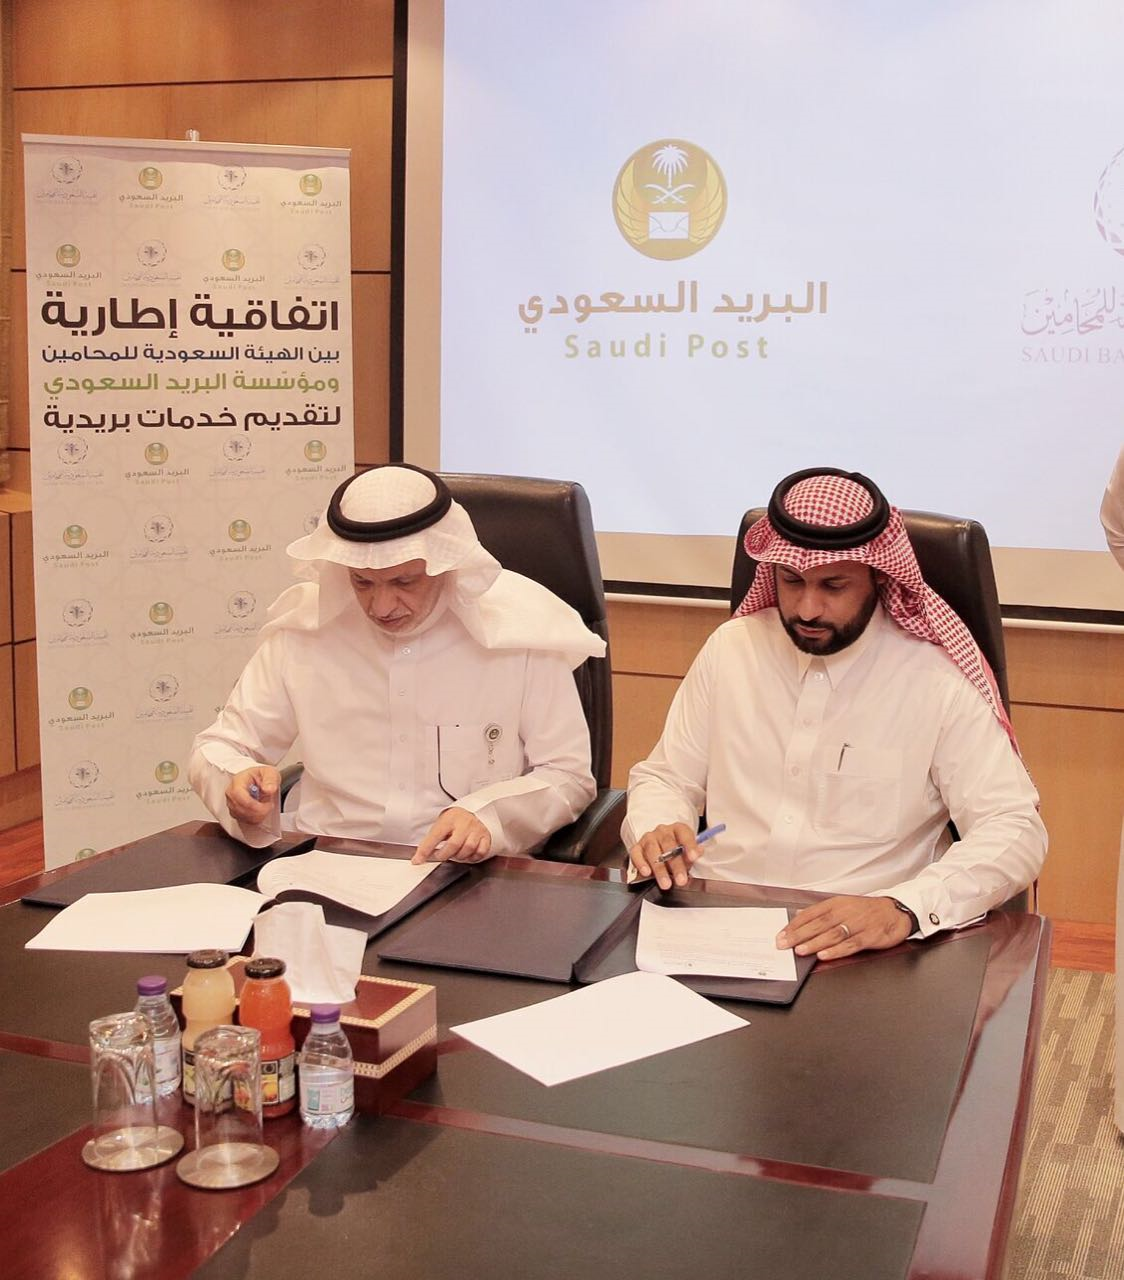  البريد السعودي يوقع اتفاقية مع هيئة المحامين لتقديم الخدمات اللوجستية